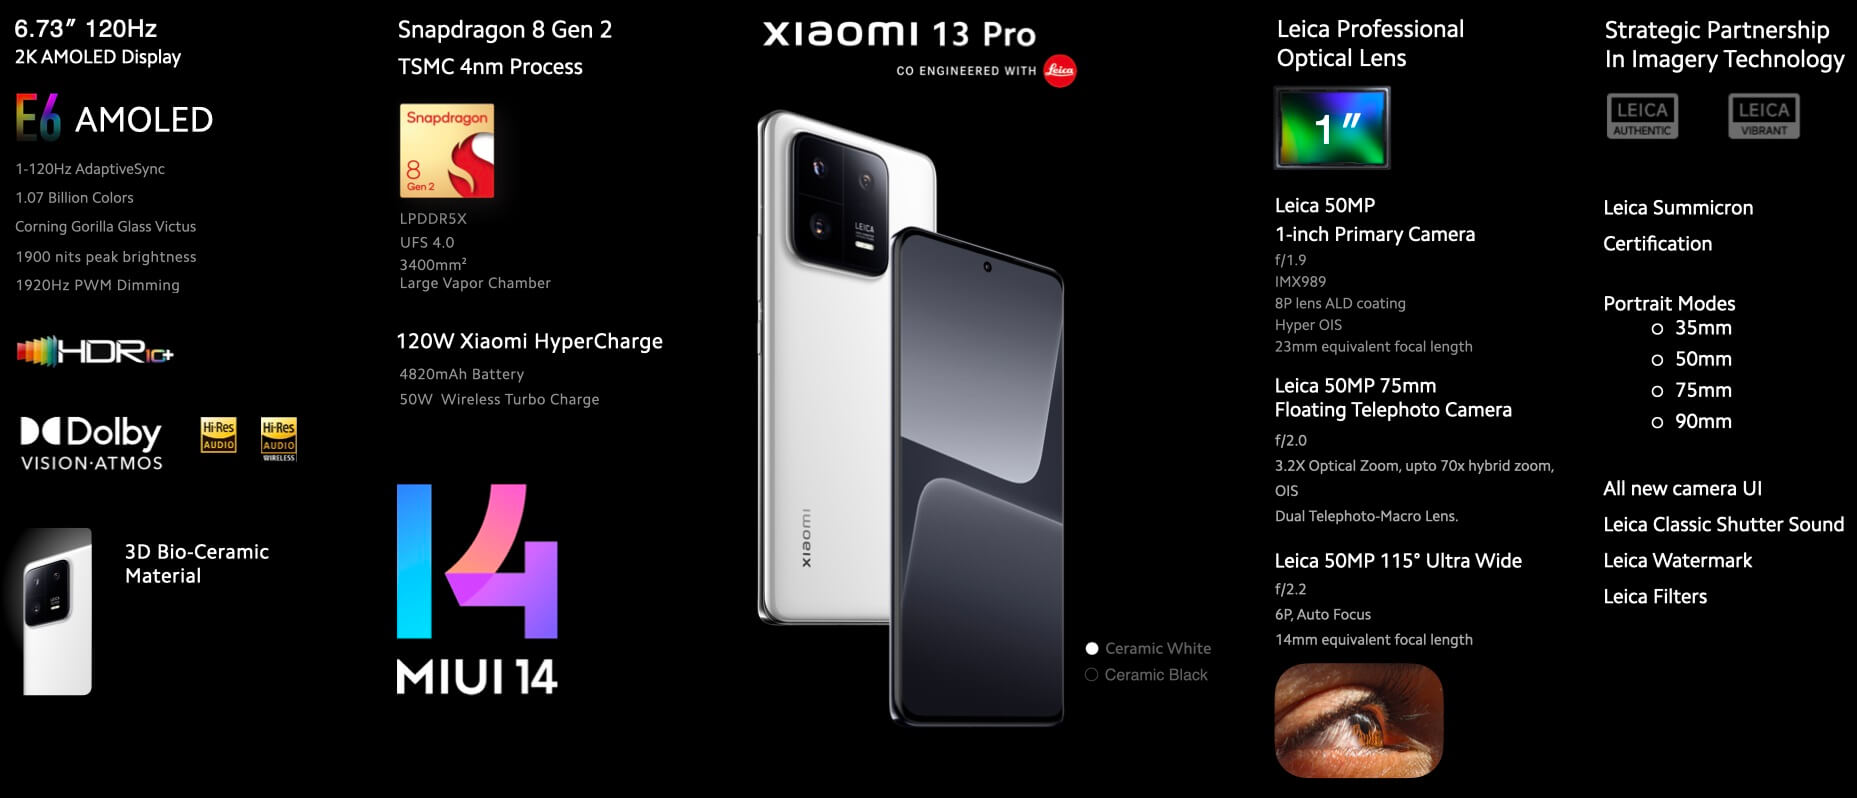 Xiaomi 13 Pro features India